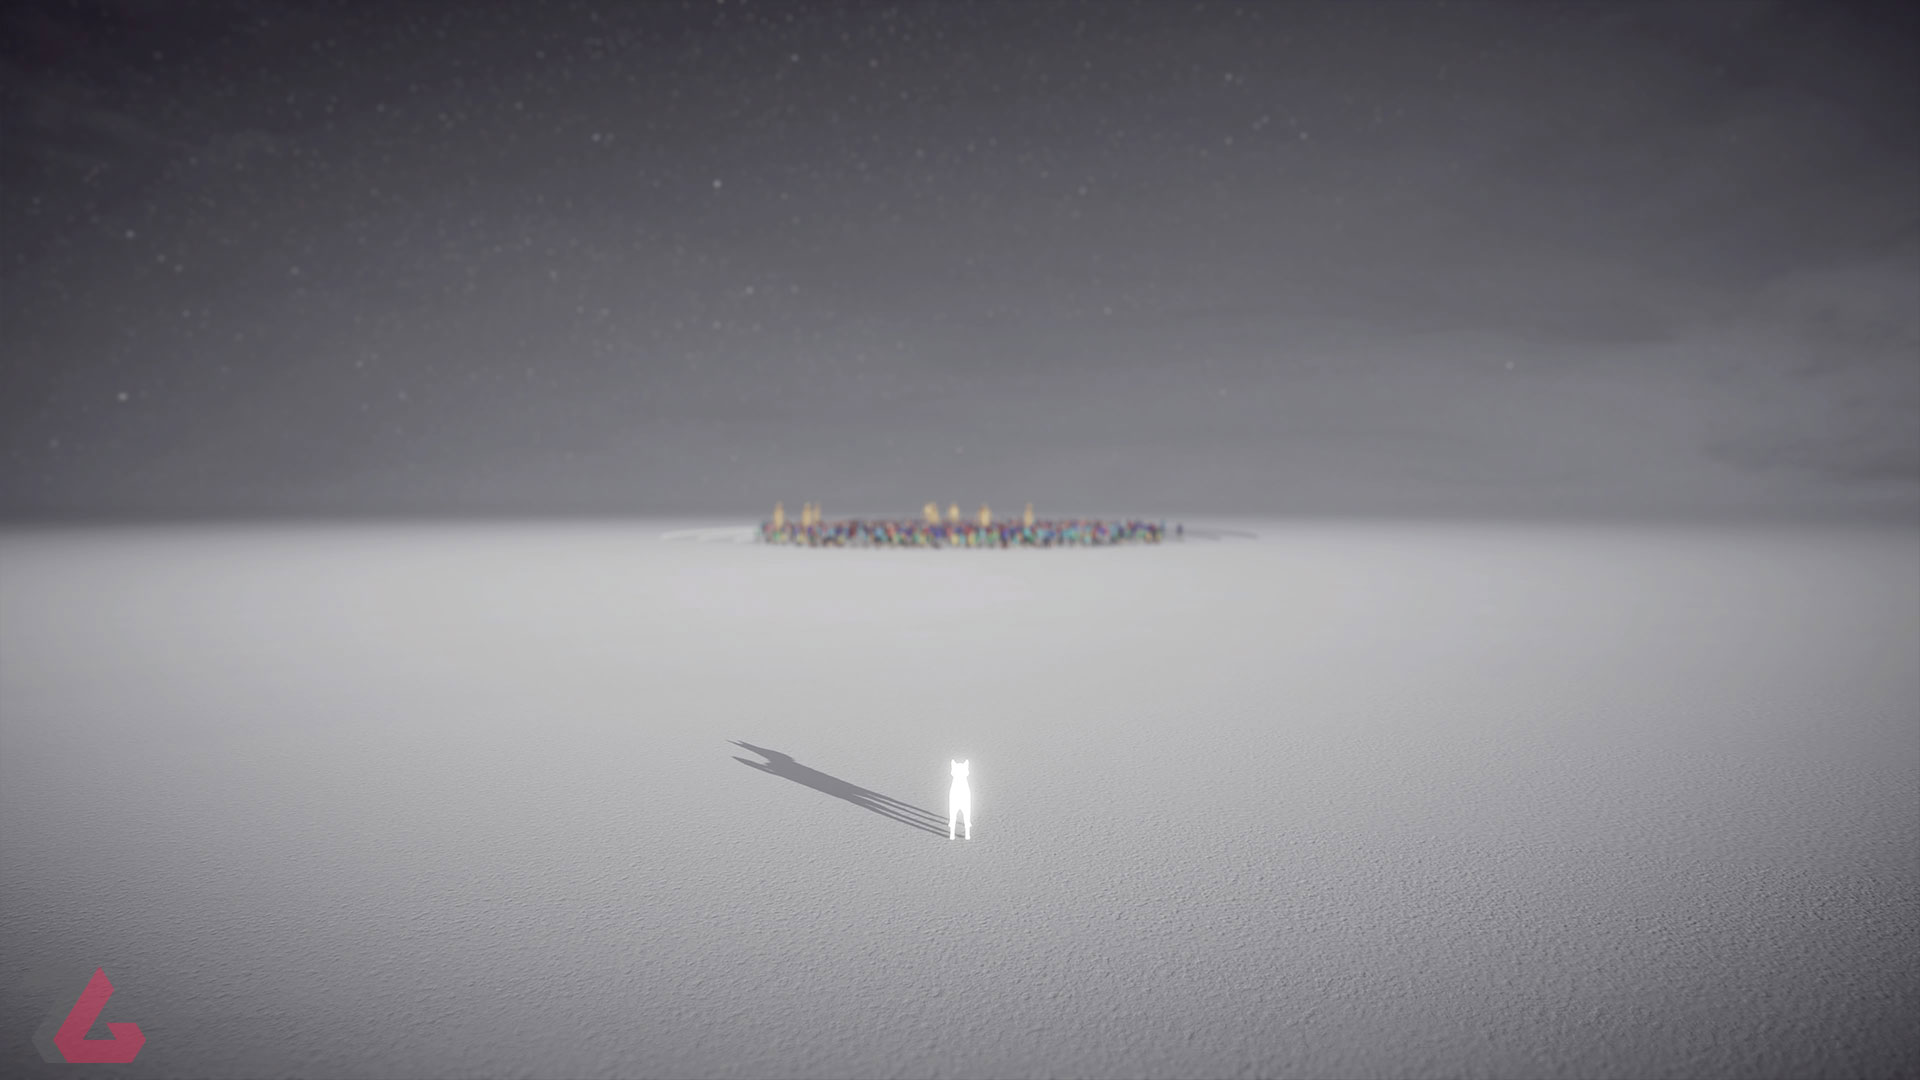 نگاه شیبا اینو نورانی از دور به گروهی از انسان ها در بازی Humanity (هیومنیتی)، محصول سال ۲۰۲۳ میلادی برای پلی استیشن 5، پلی استیشن 4 و کامپیوتر